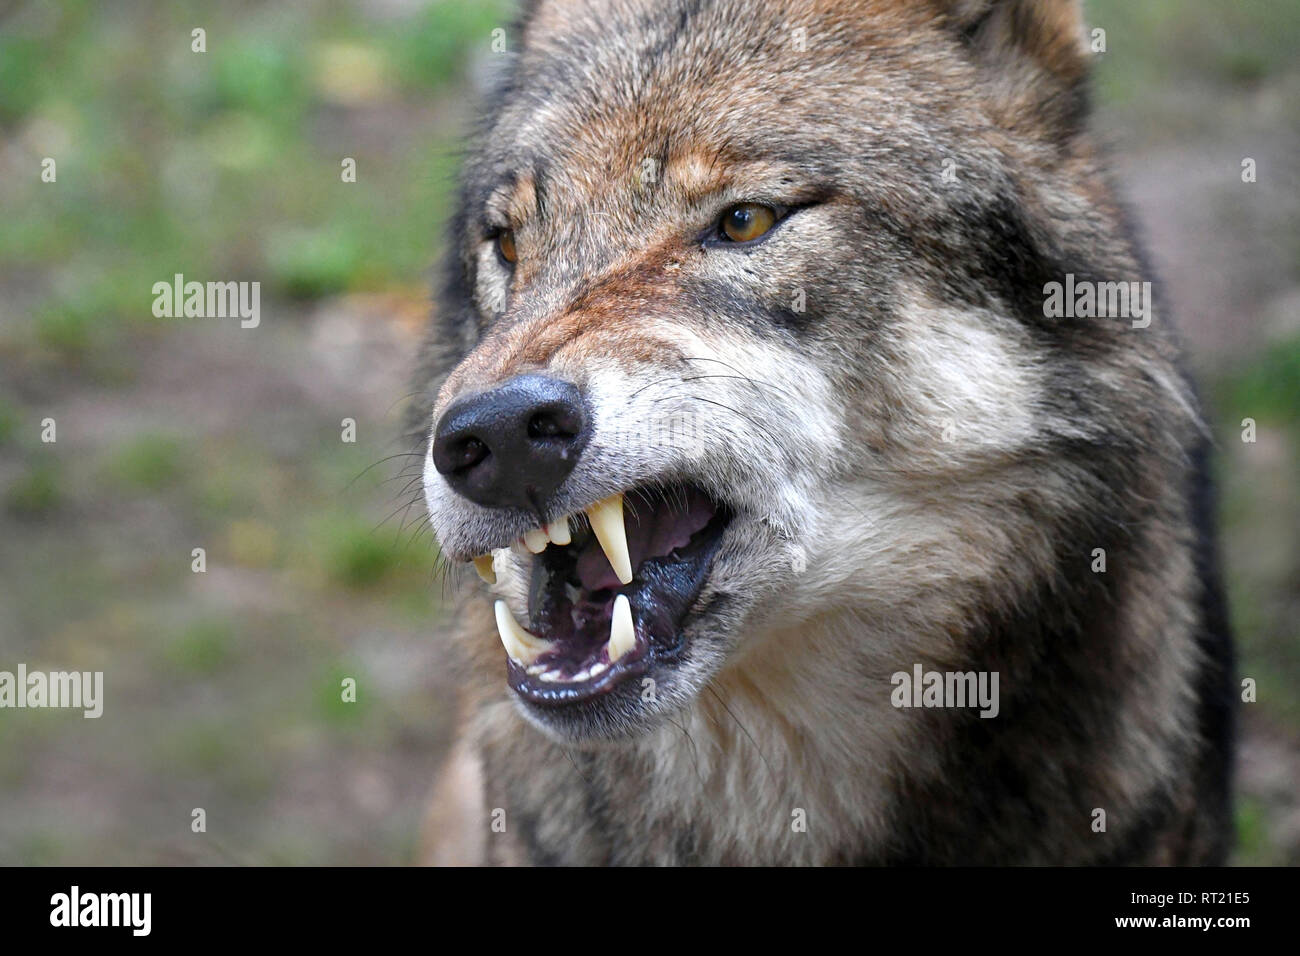 Canino, Canis lupus, el lobo europeo, lobo gris, lobo gris, Doggy,  Isegrimm, close-ups de lobos, depredador, los depredadores, el lobo, el lobo,  el lobo en otoño * Fotografía de stock - Alamy